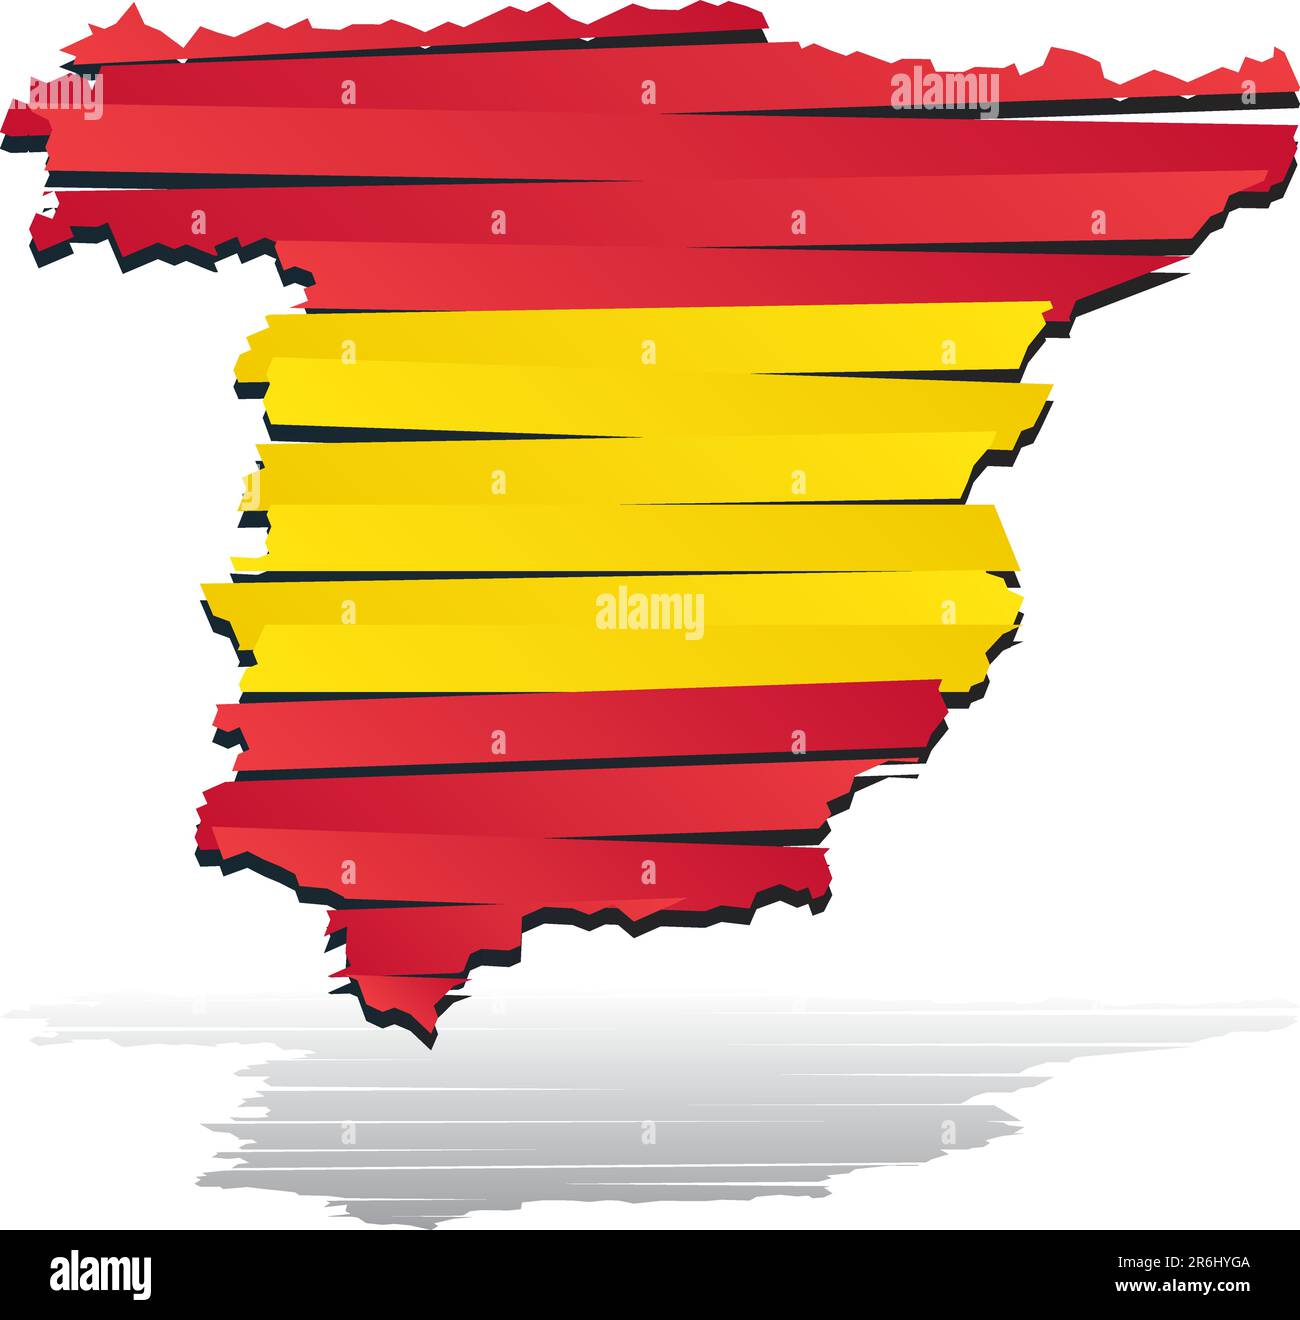 Abstract vector carte des couleurs de l'Espagne aux couleurs du drapeau national par pays Illustration de Vecteur